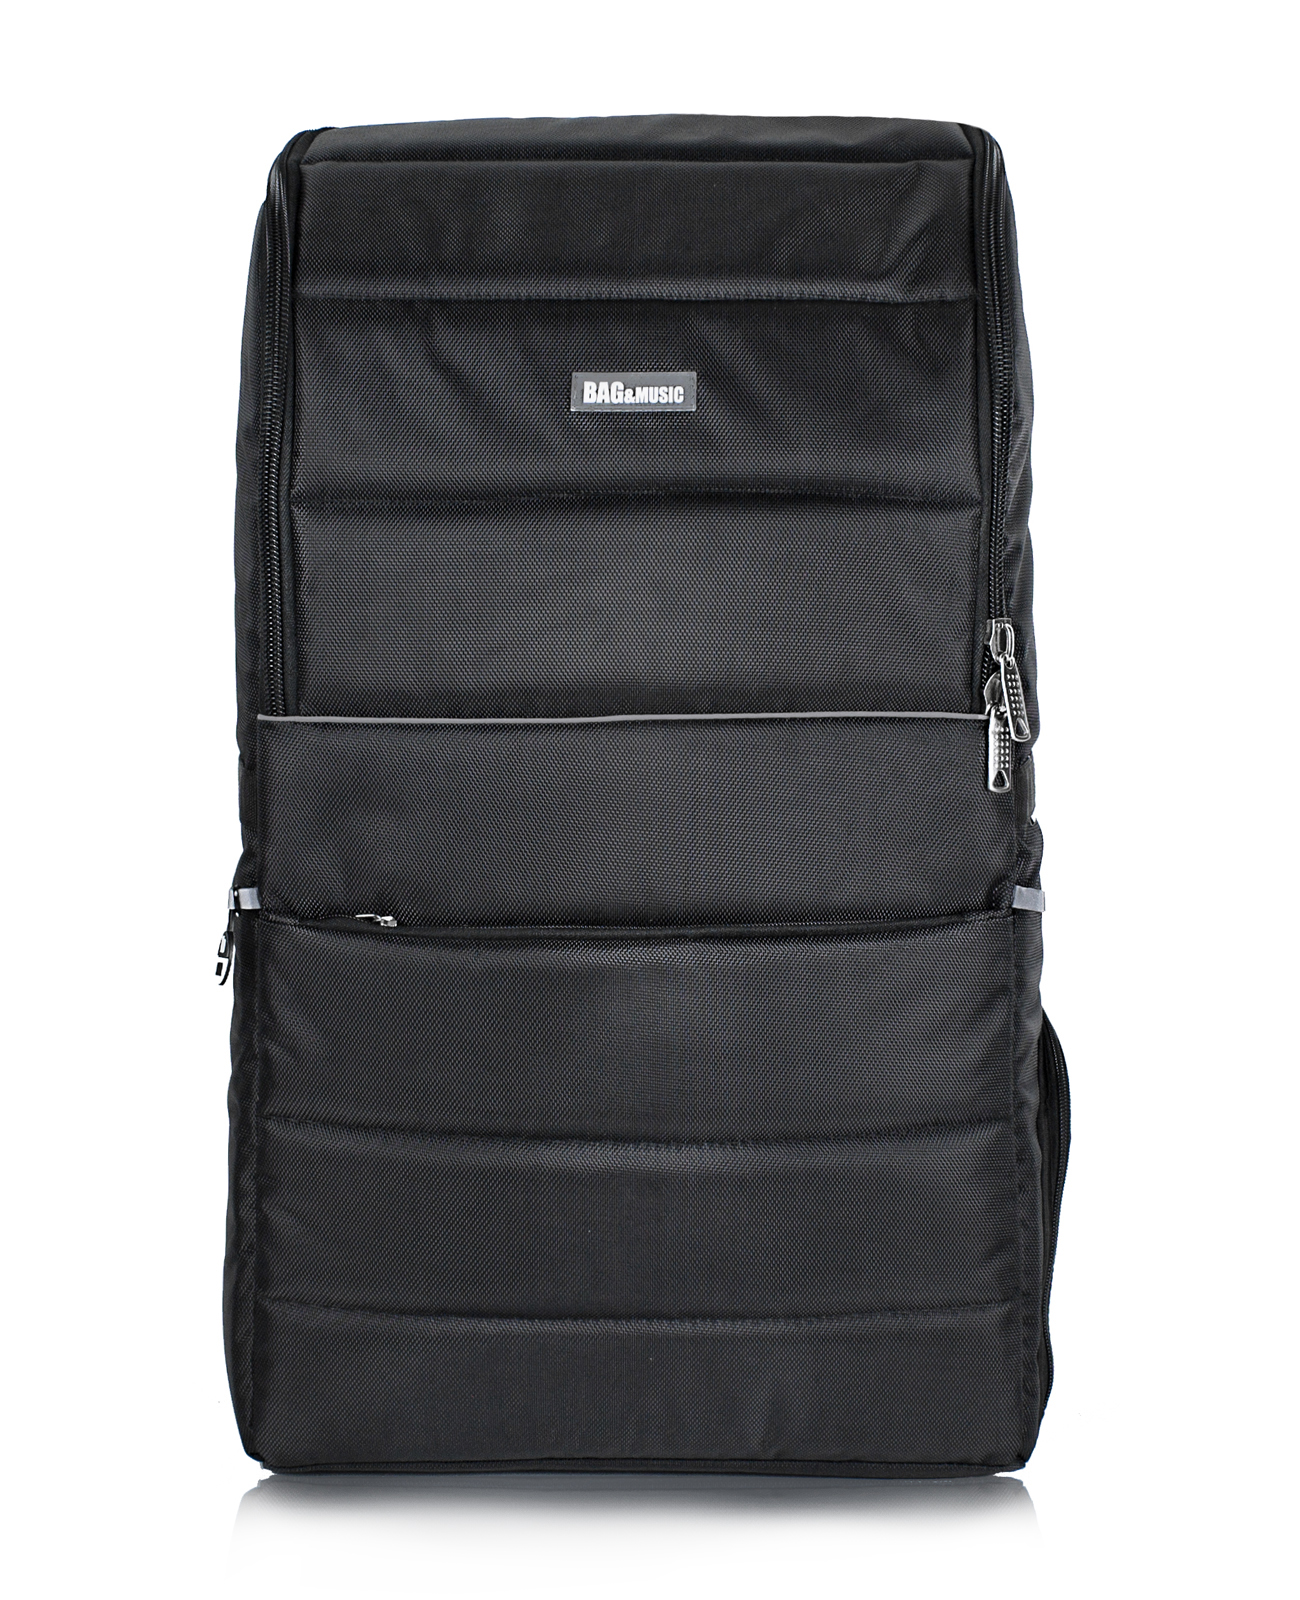 Рюкзак для музыканта Bagandmusic CUBE Mega Max BM1135 черный